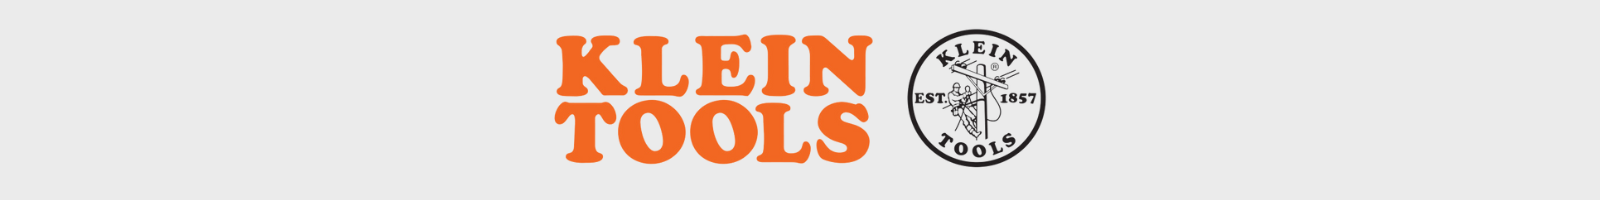 logo klein tools